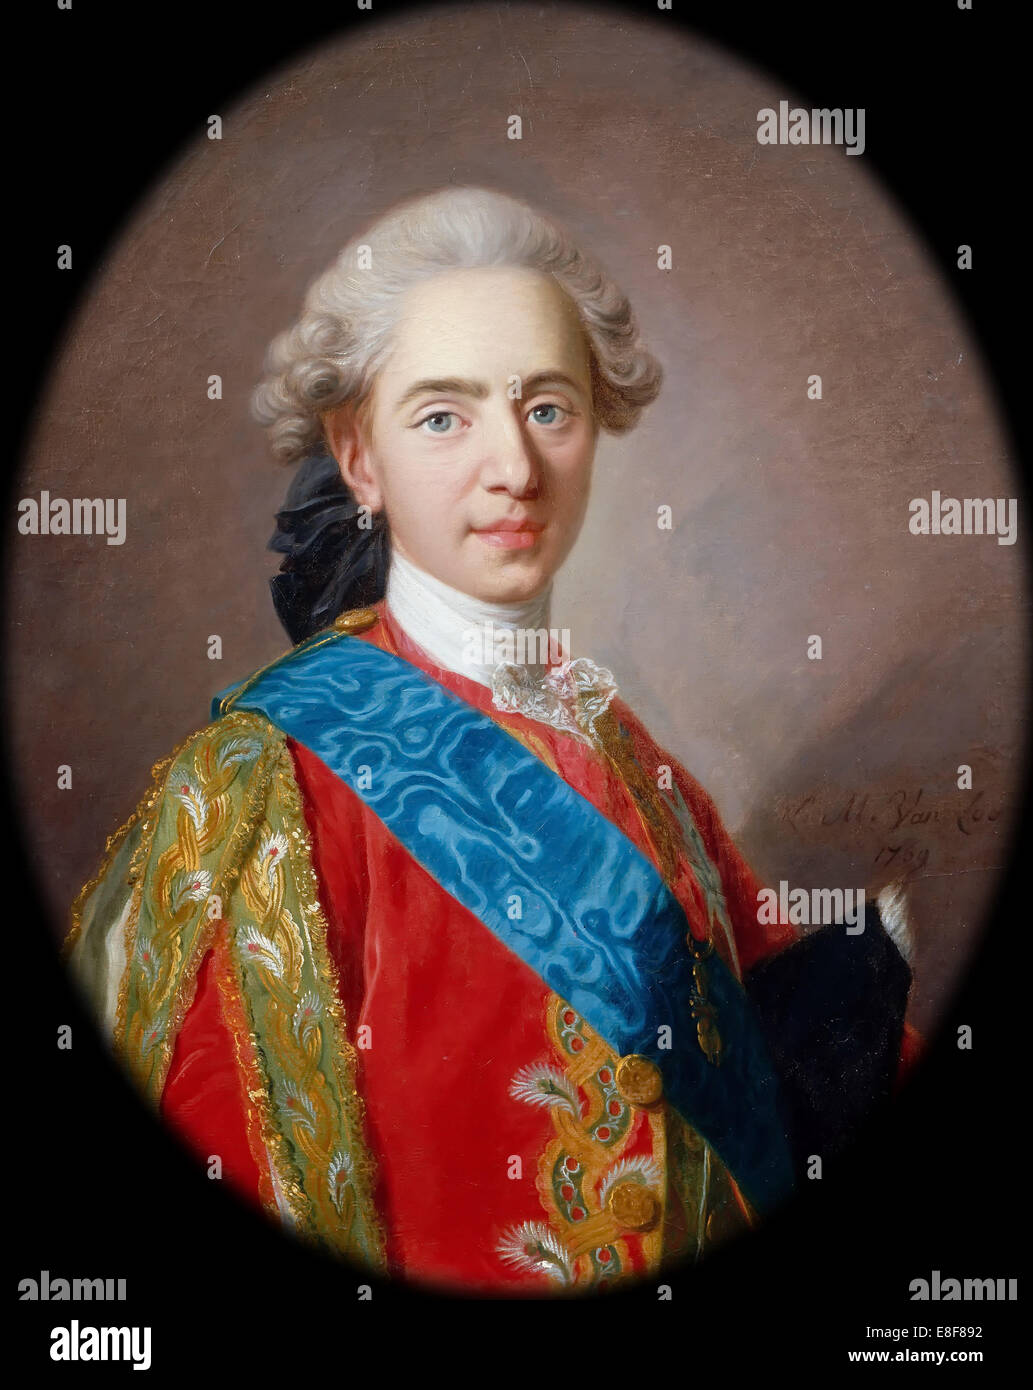 Louis-Auguste, Duc de Berry (1754-1793), futuro Luis XVI, Rey de Francia. Artista: Van Loo, Louis Michel (1707-1771) Foto de stock